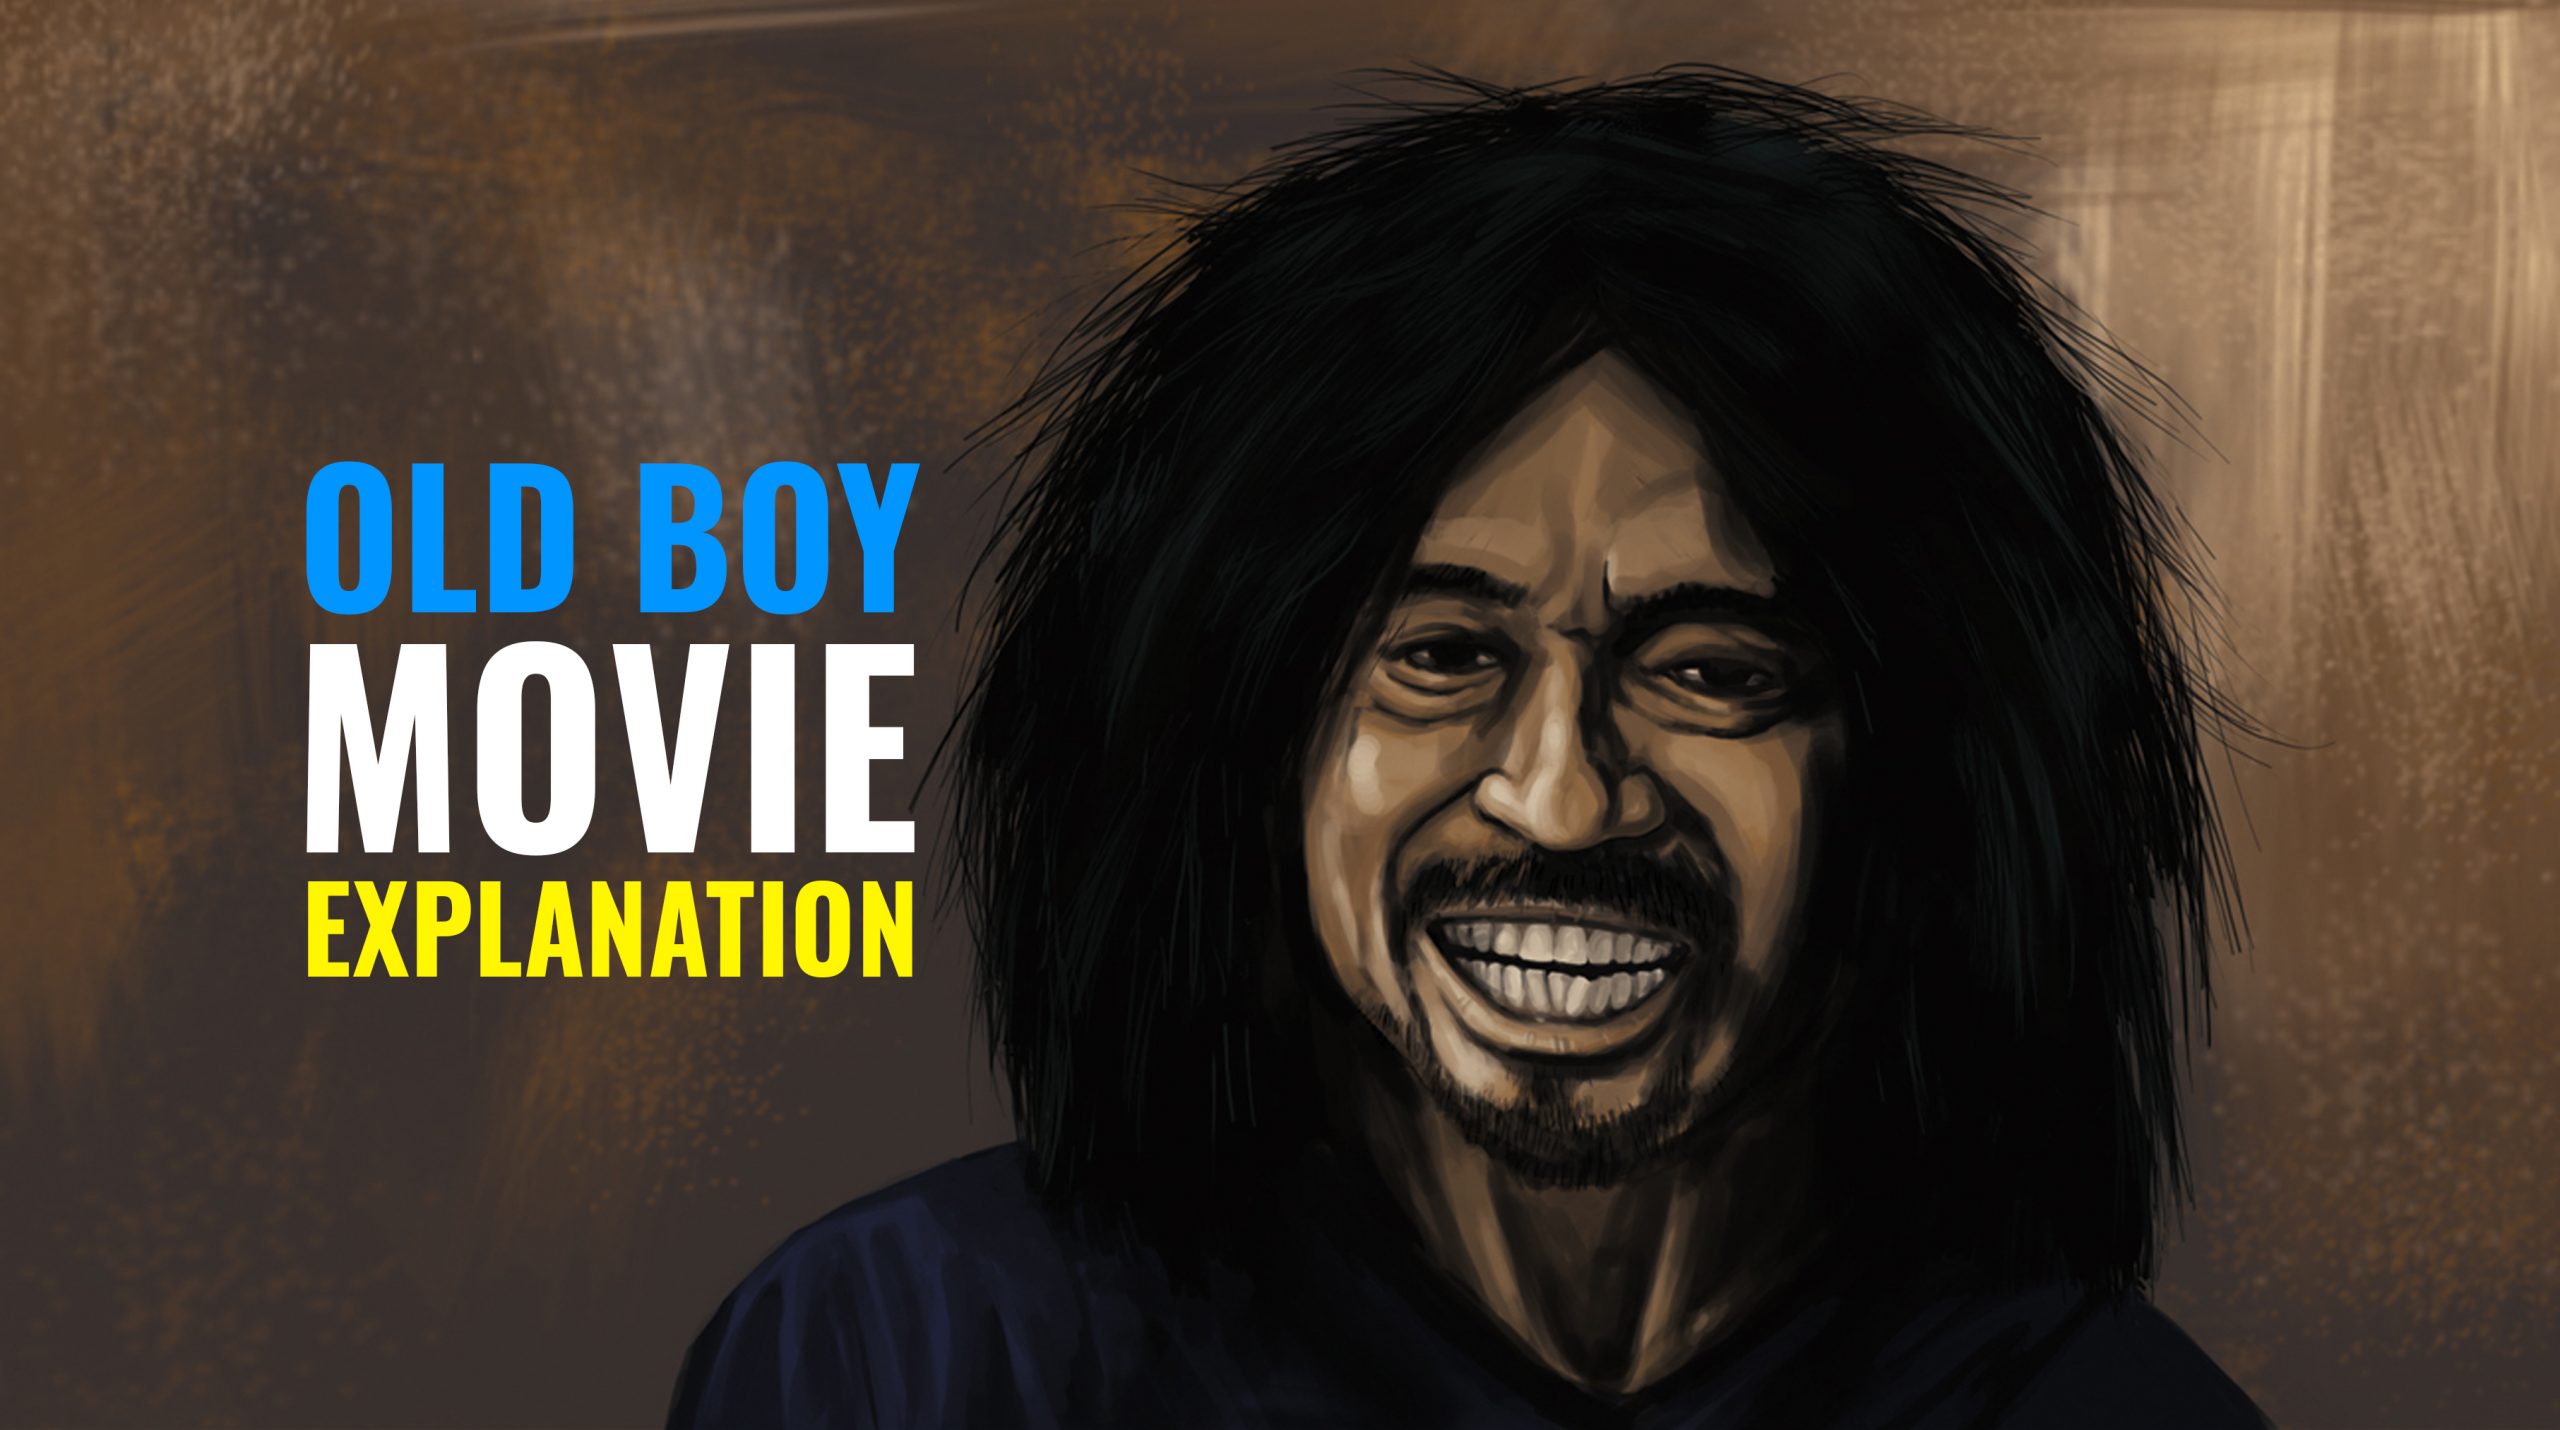 Old Boy: Best Korean Thriller Movie | Old Boy Movie Explanation